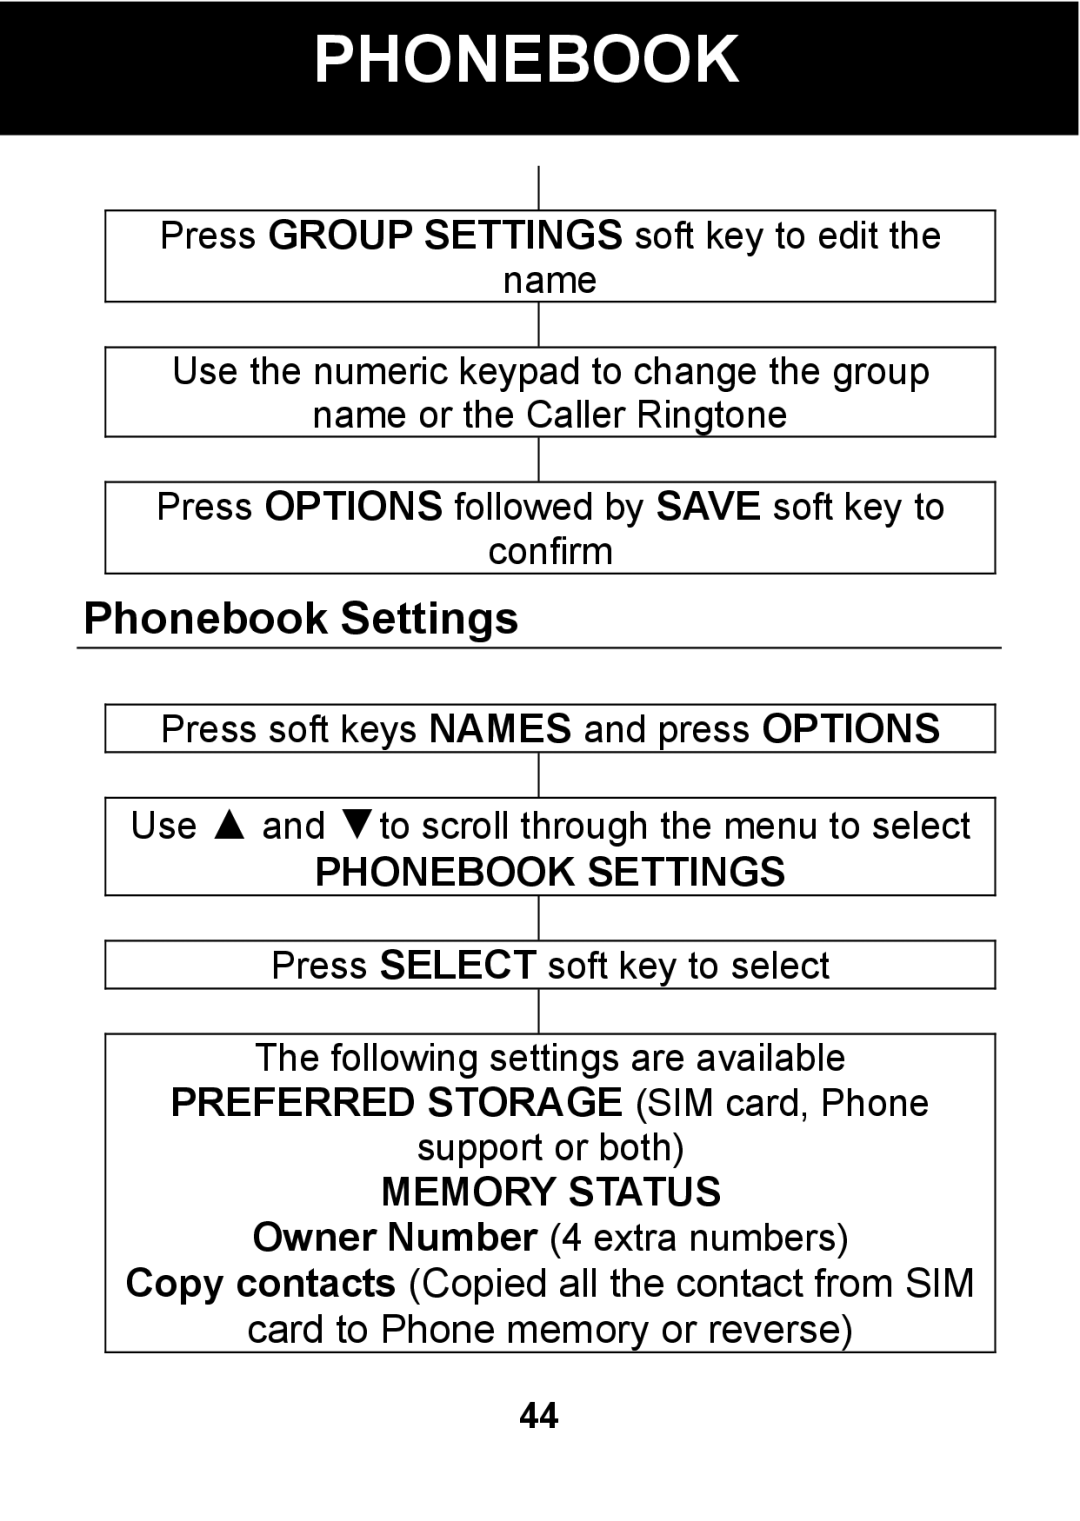 Pal/Pax PAL101 manual Phonebook Settings, Preferred Storage SIM card, Phone, Memory Status 